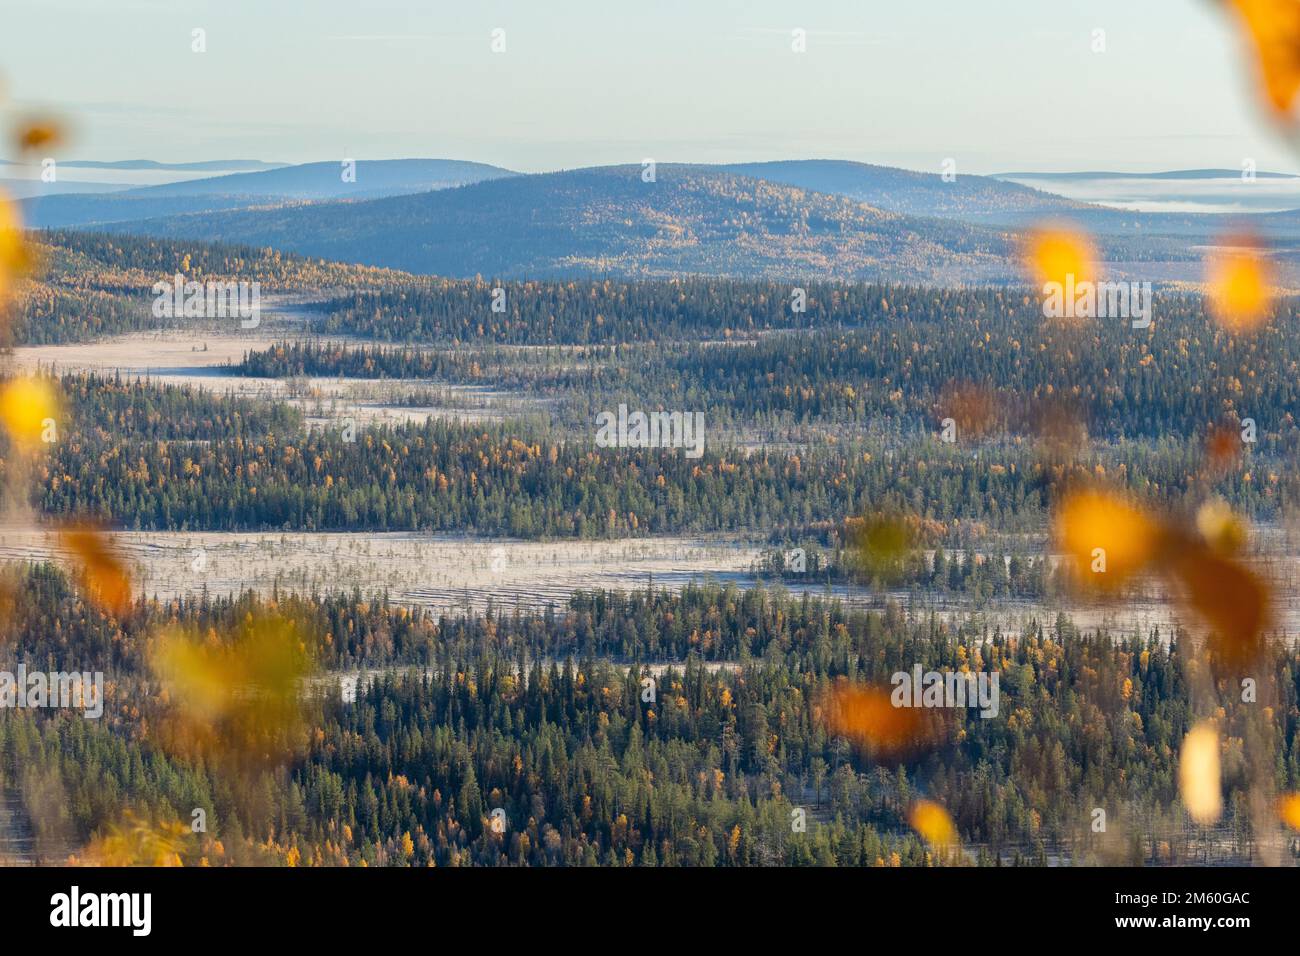 Vue sur le paysage avec des tourbières, des forêts et des montagnes lors d'une matinée d'automne froide dans le parc national de Salla, dans le nord de la Finlande Banque D'Images